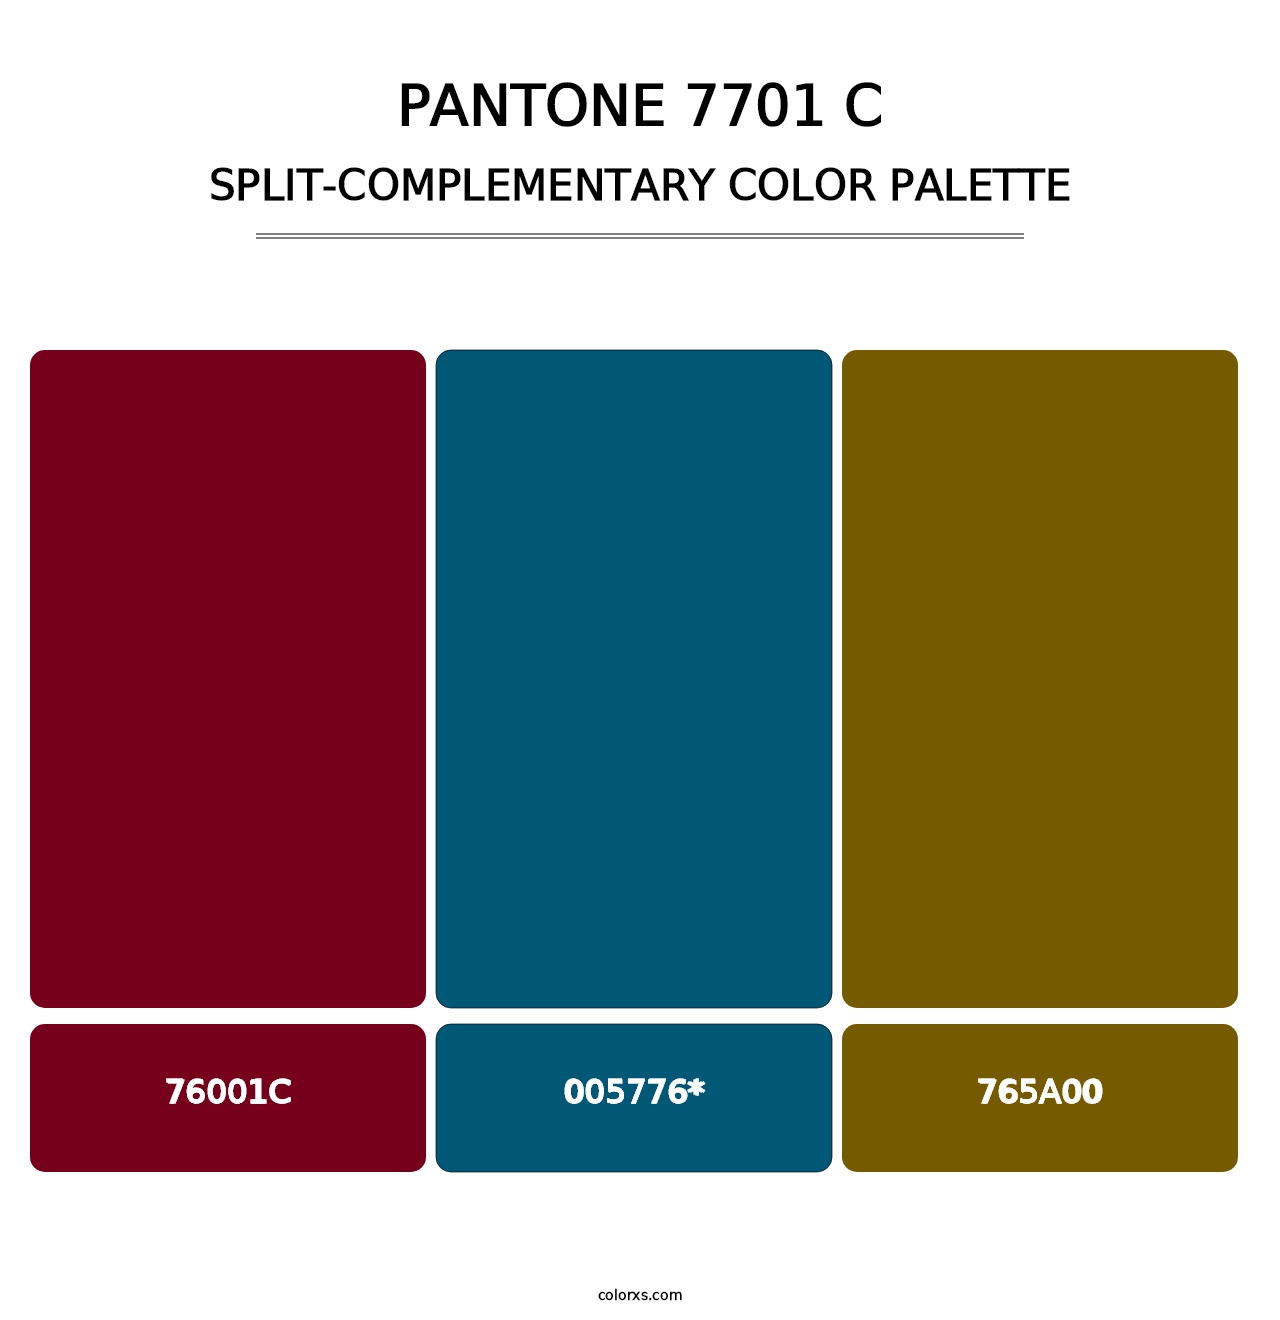 PANTONE 7701 C - Split-Complementary Color Palette